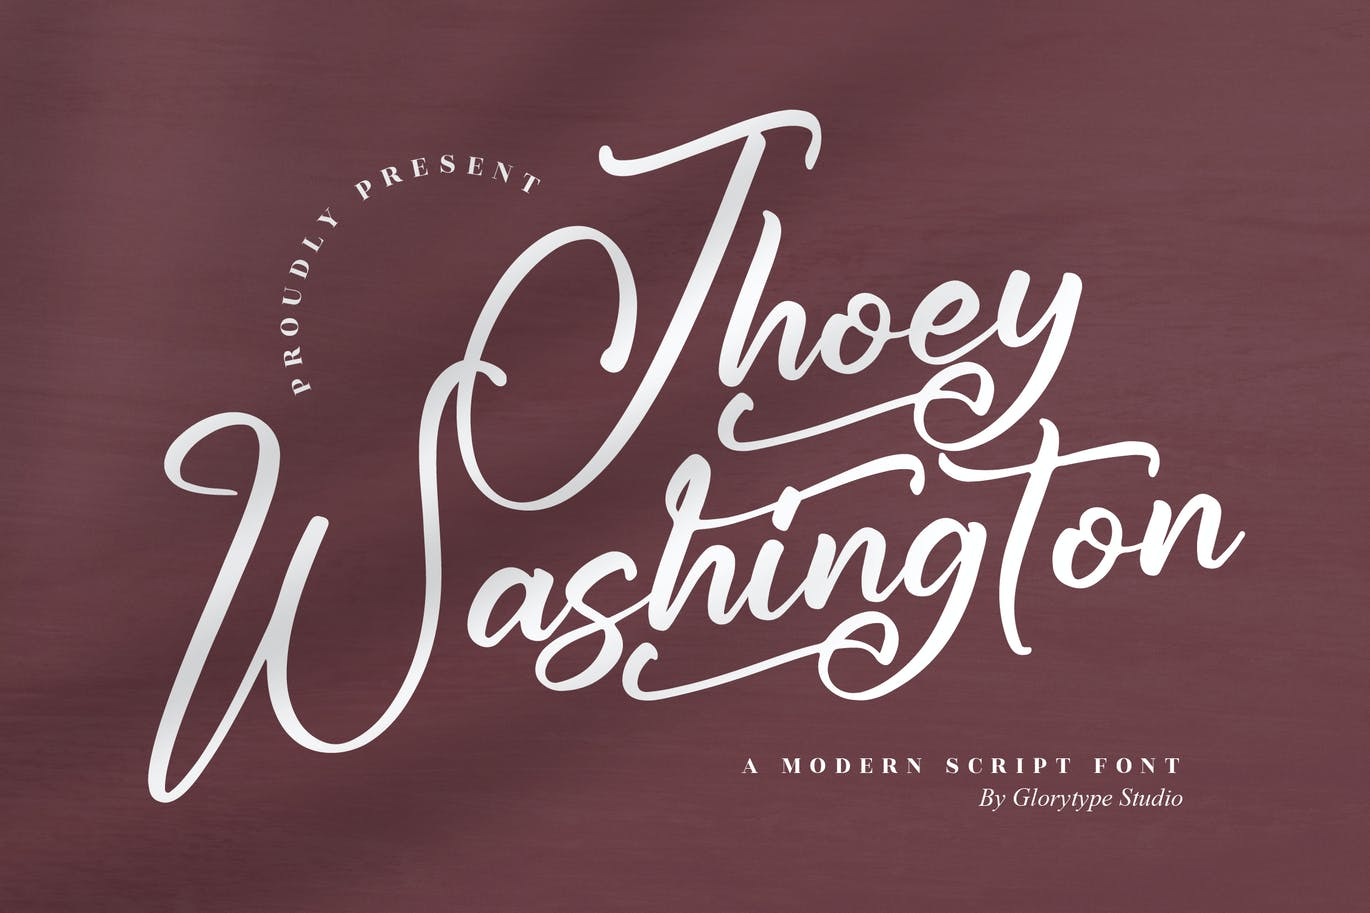 品牌推广手写脚本字体 Jhoey Washington Script Font 设计素材 第8张